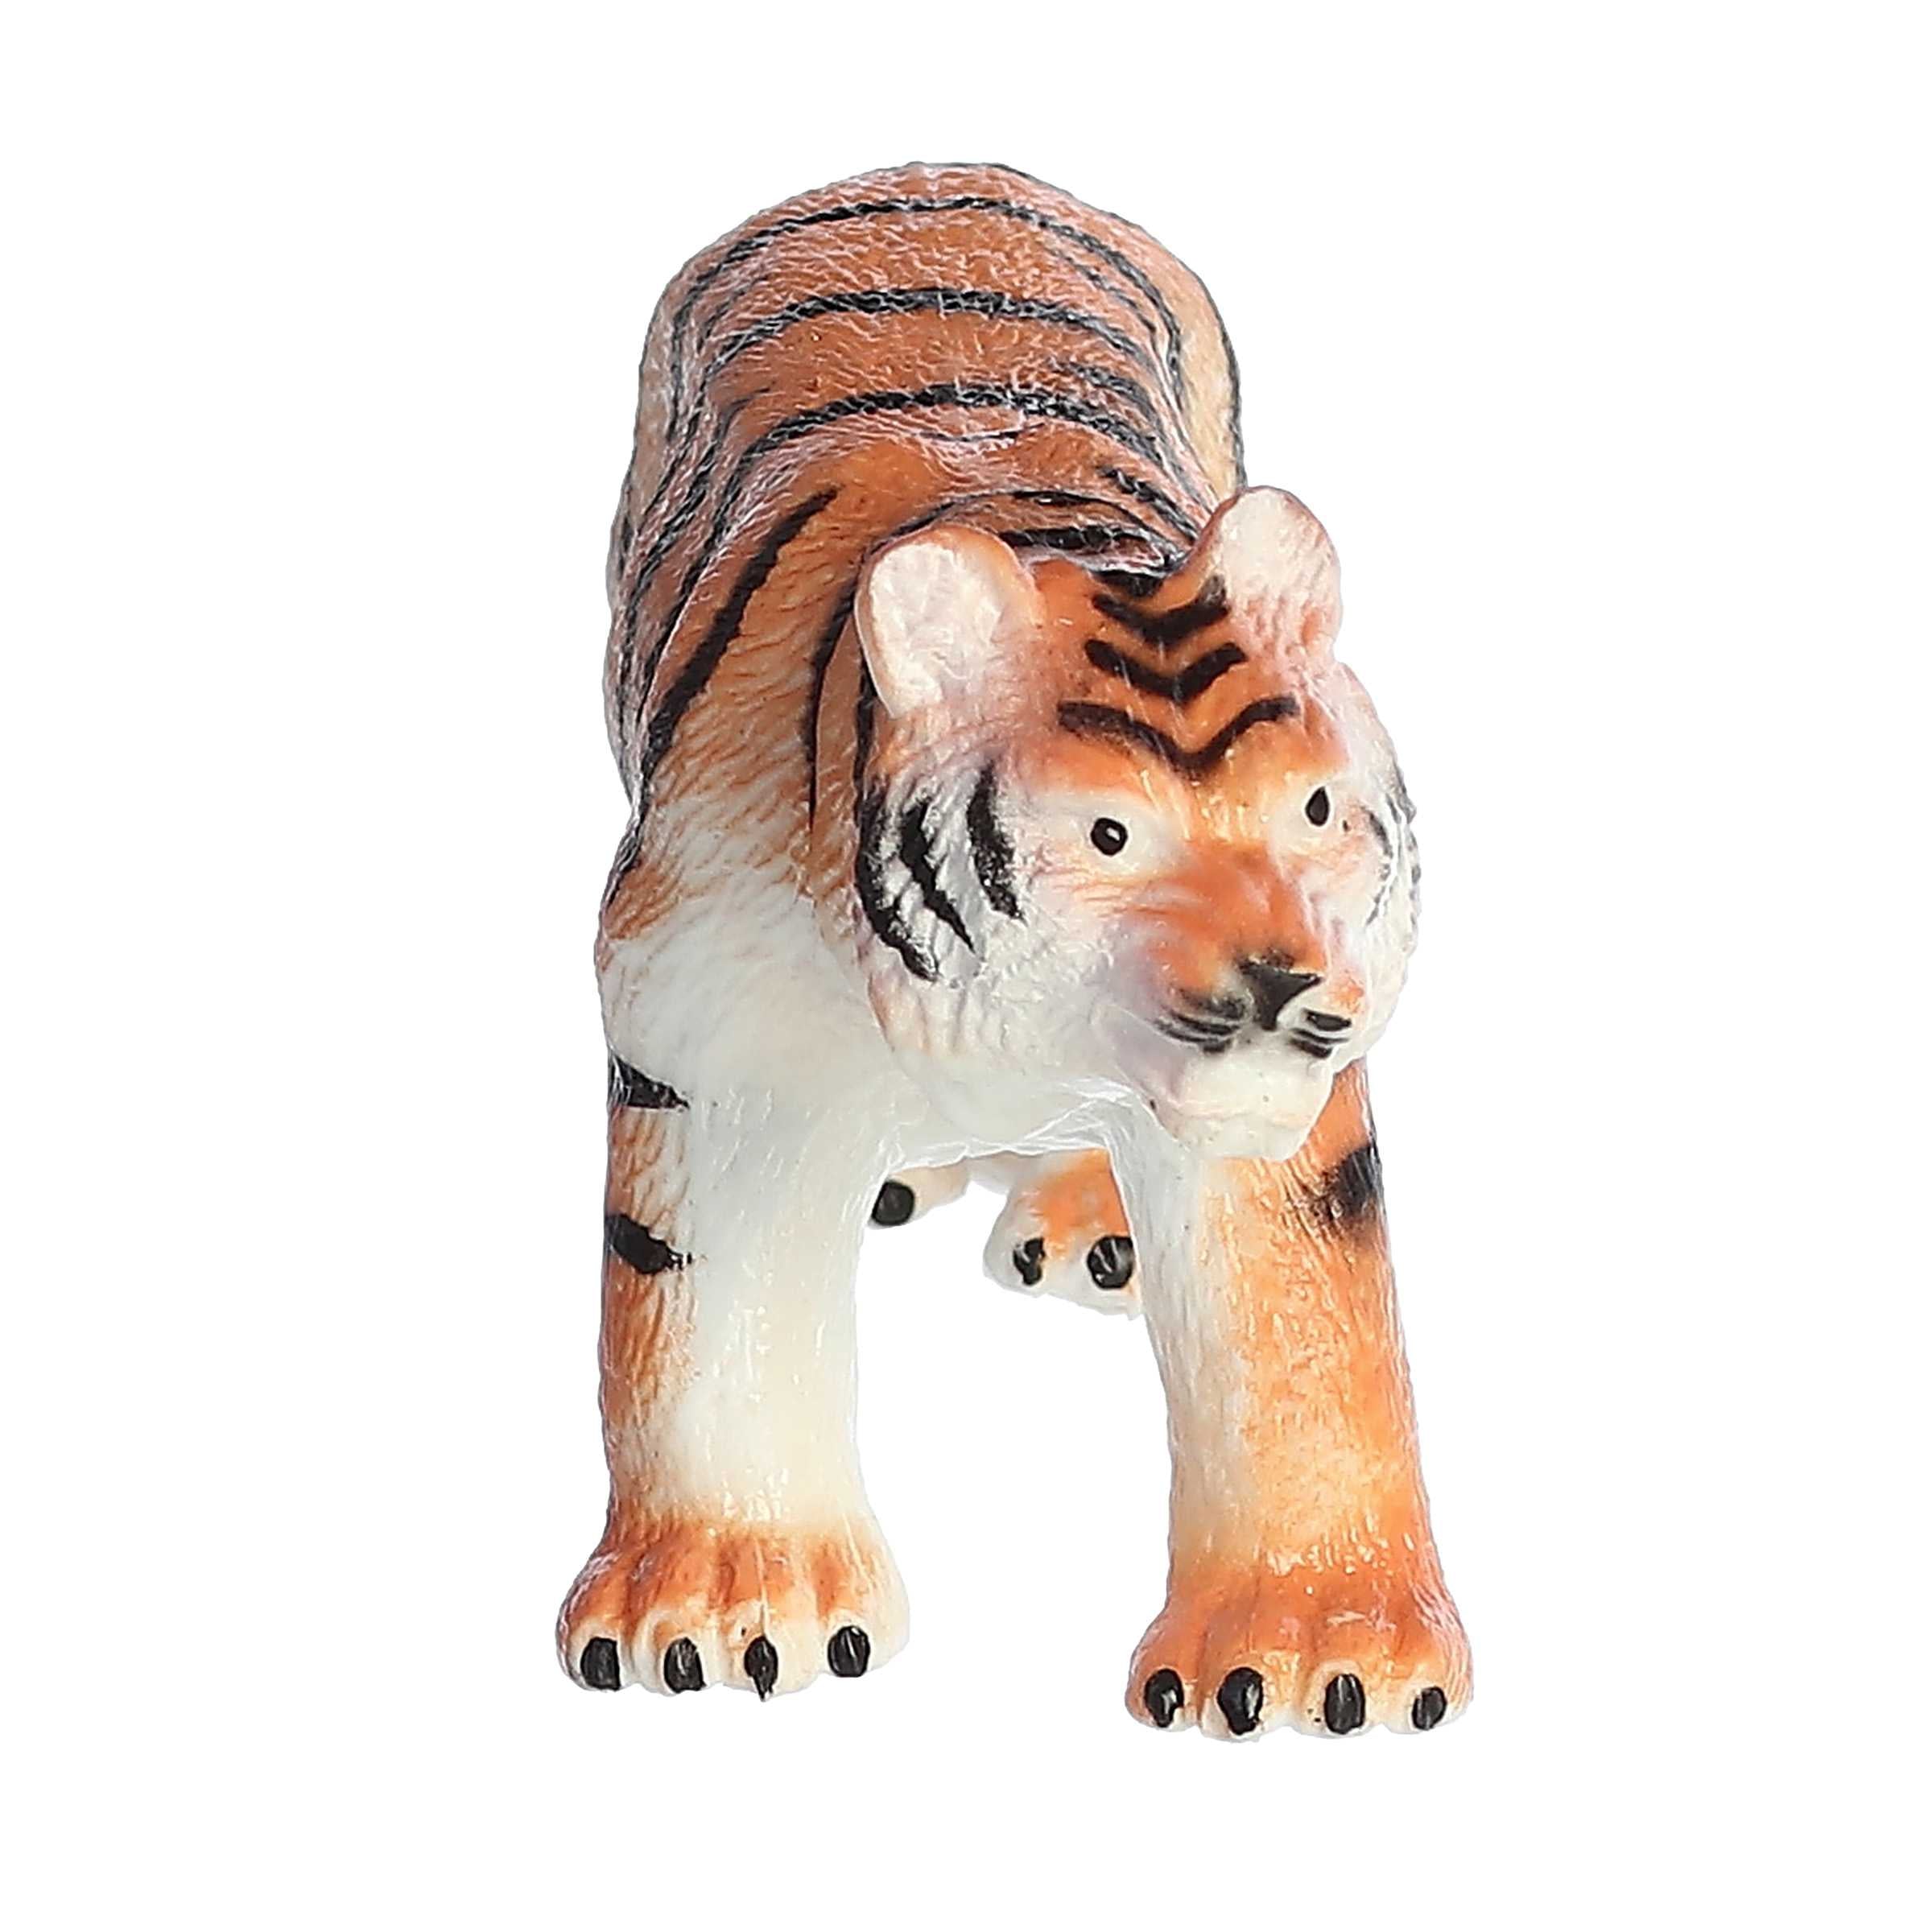 Aurora® Toys - Habitat™ - Tiger Squish Animal